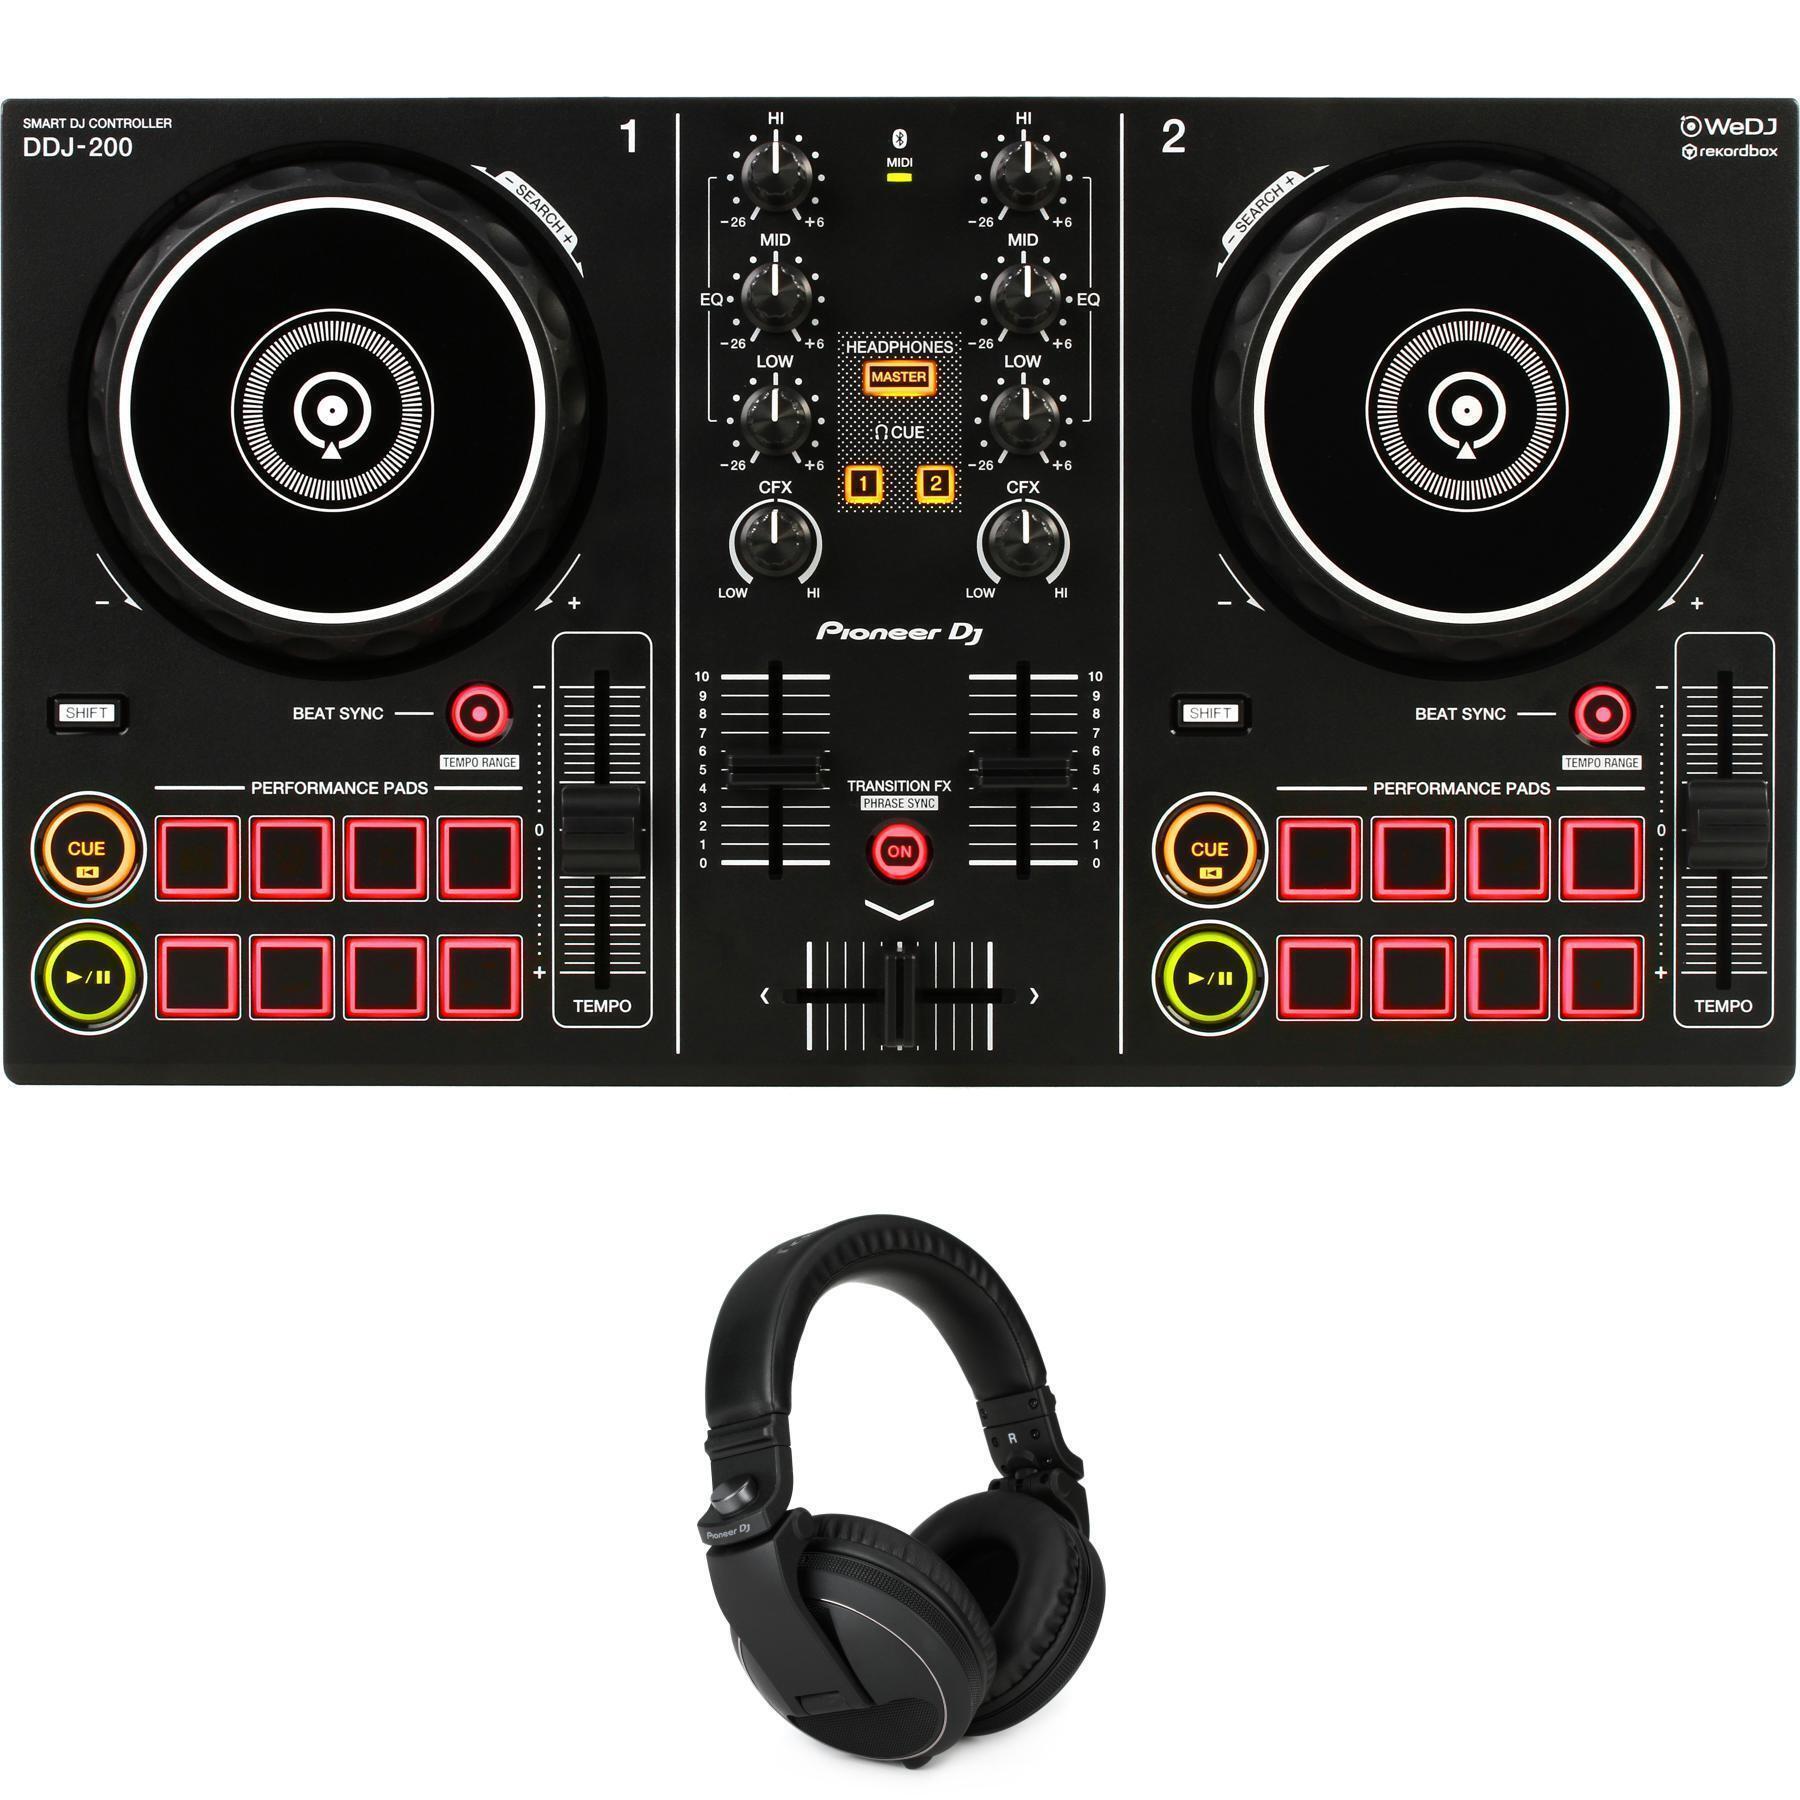 Pioneer DJ DDJ-200 2-deck Rekordbox DJ Controller with Headphones